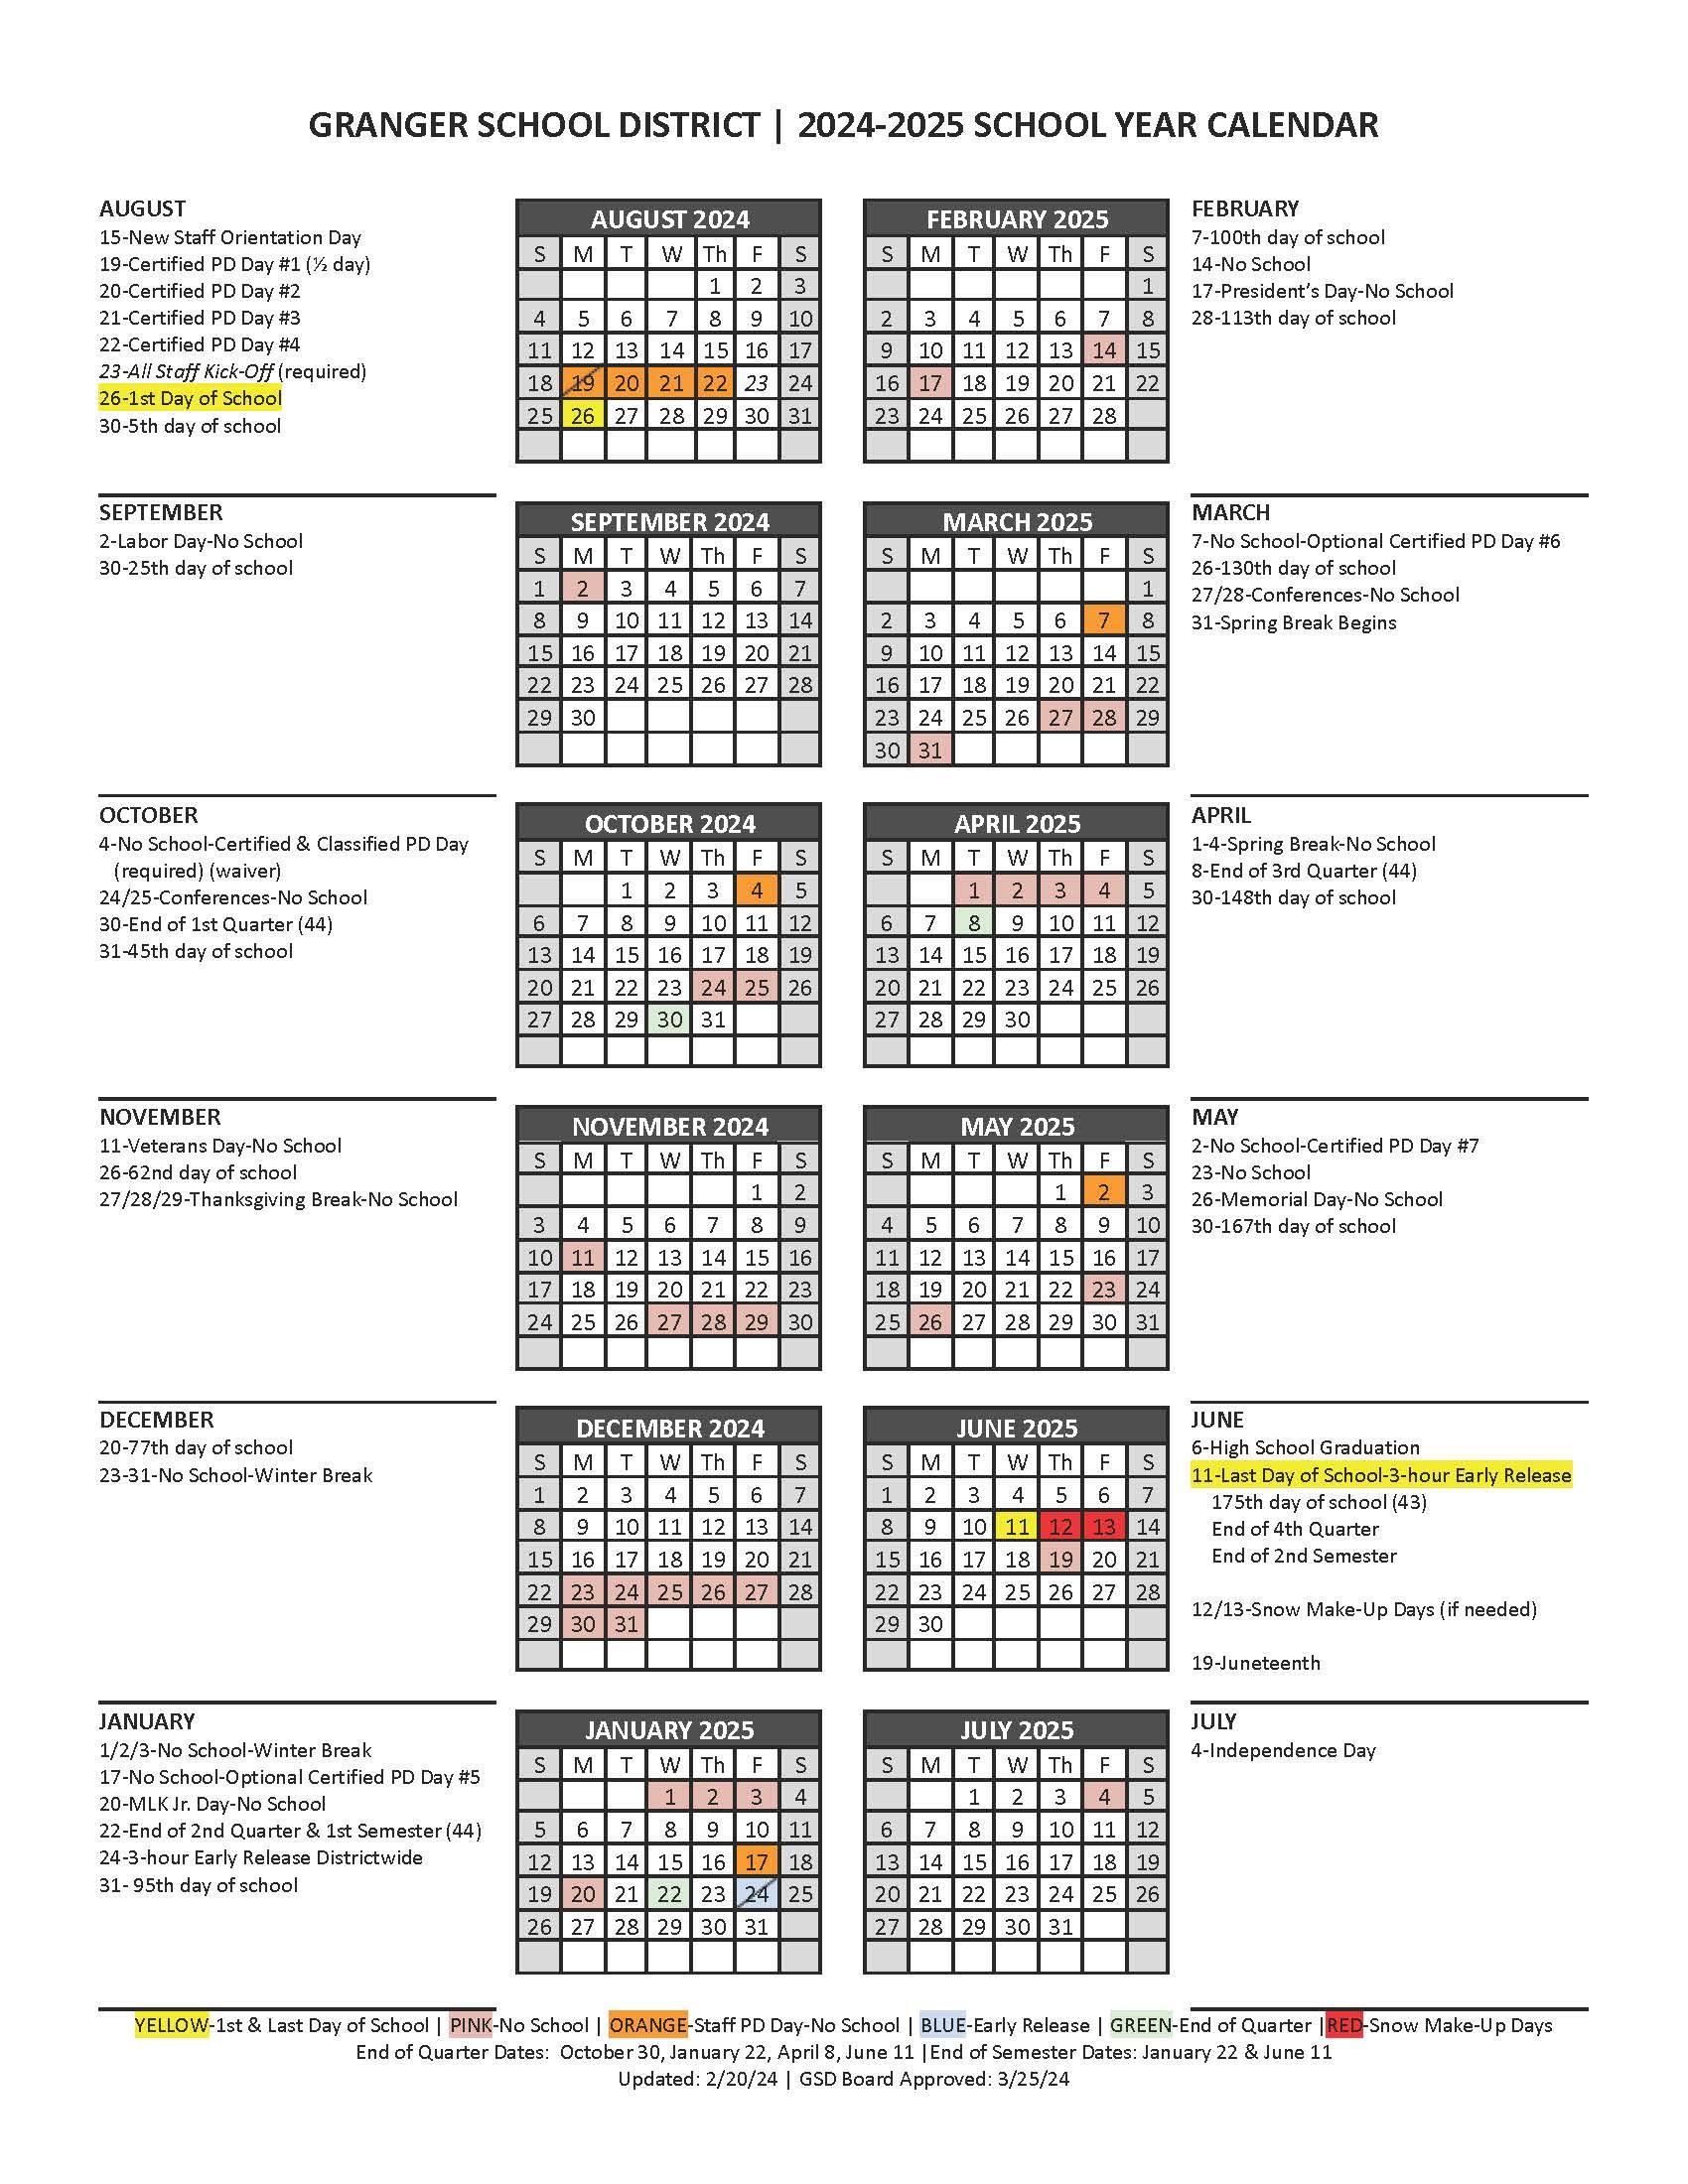 2024-25 school year calendar